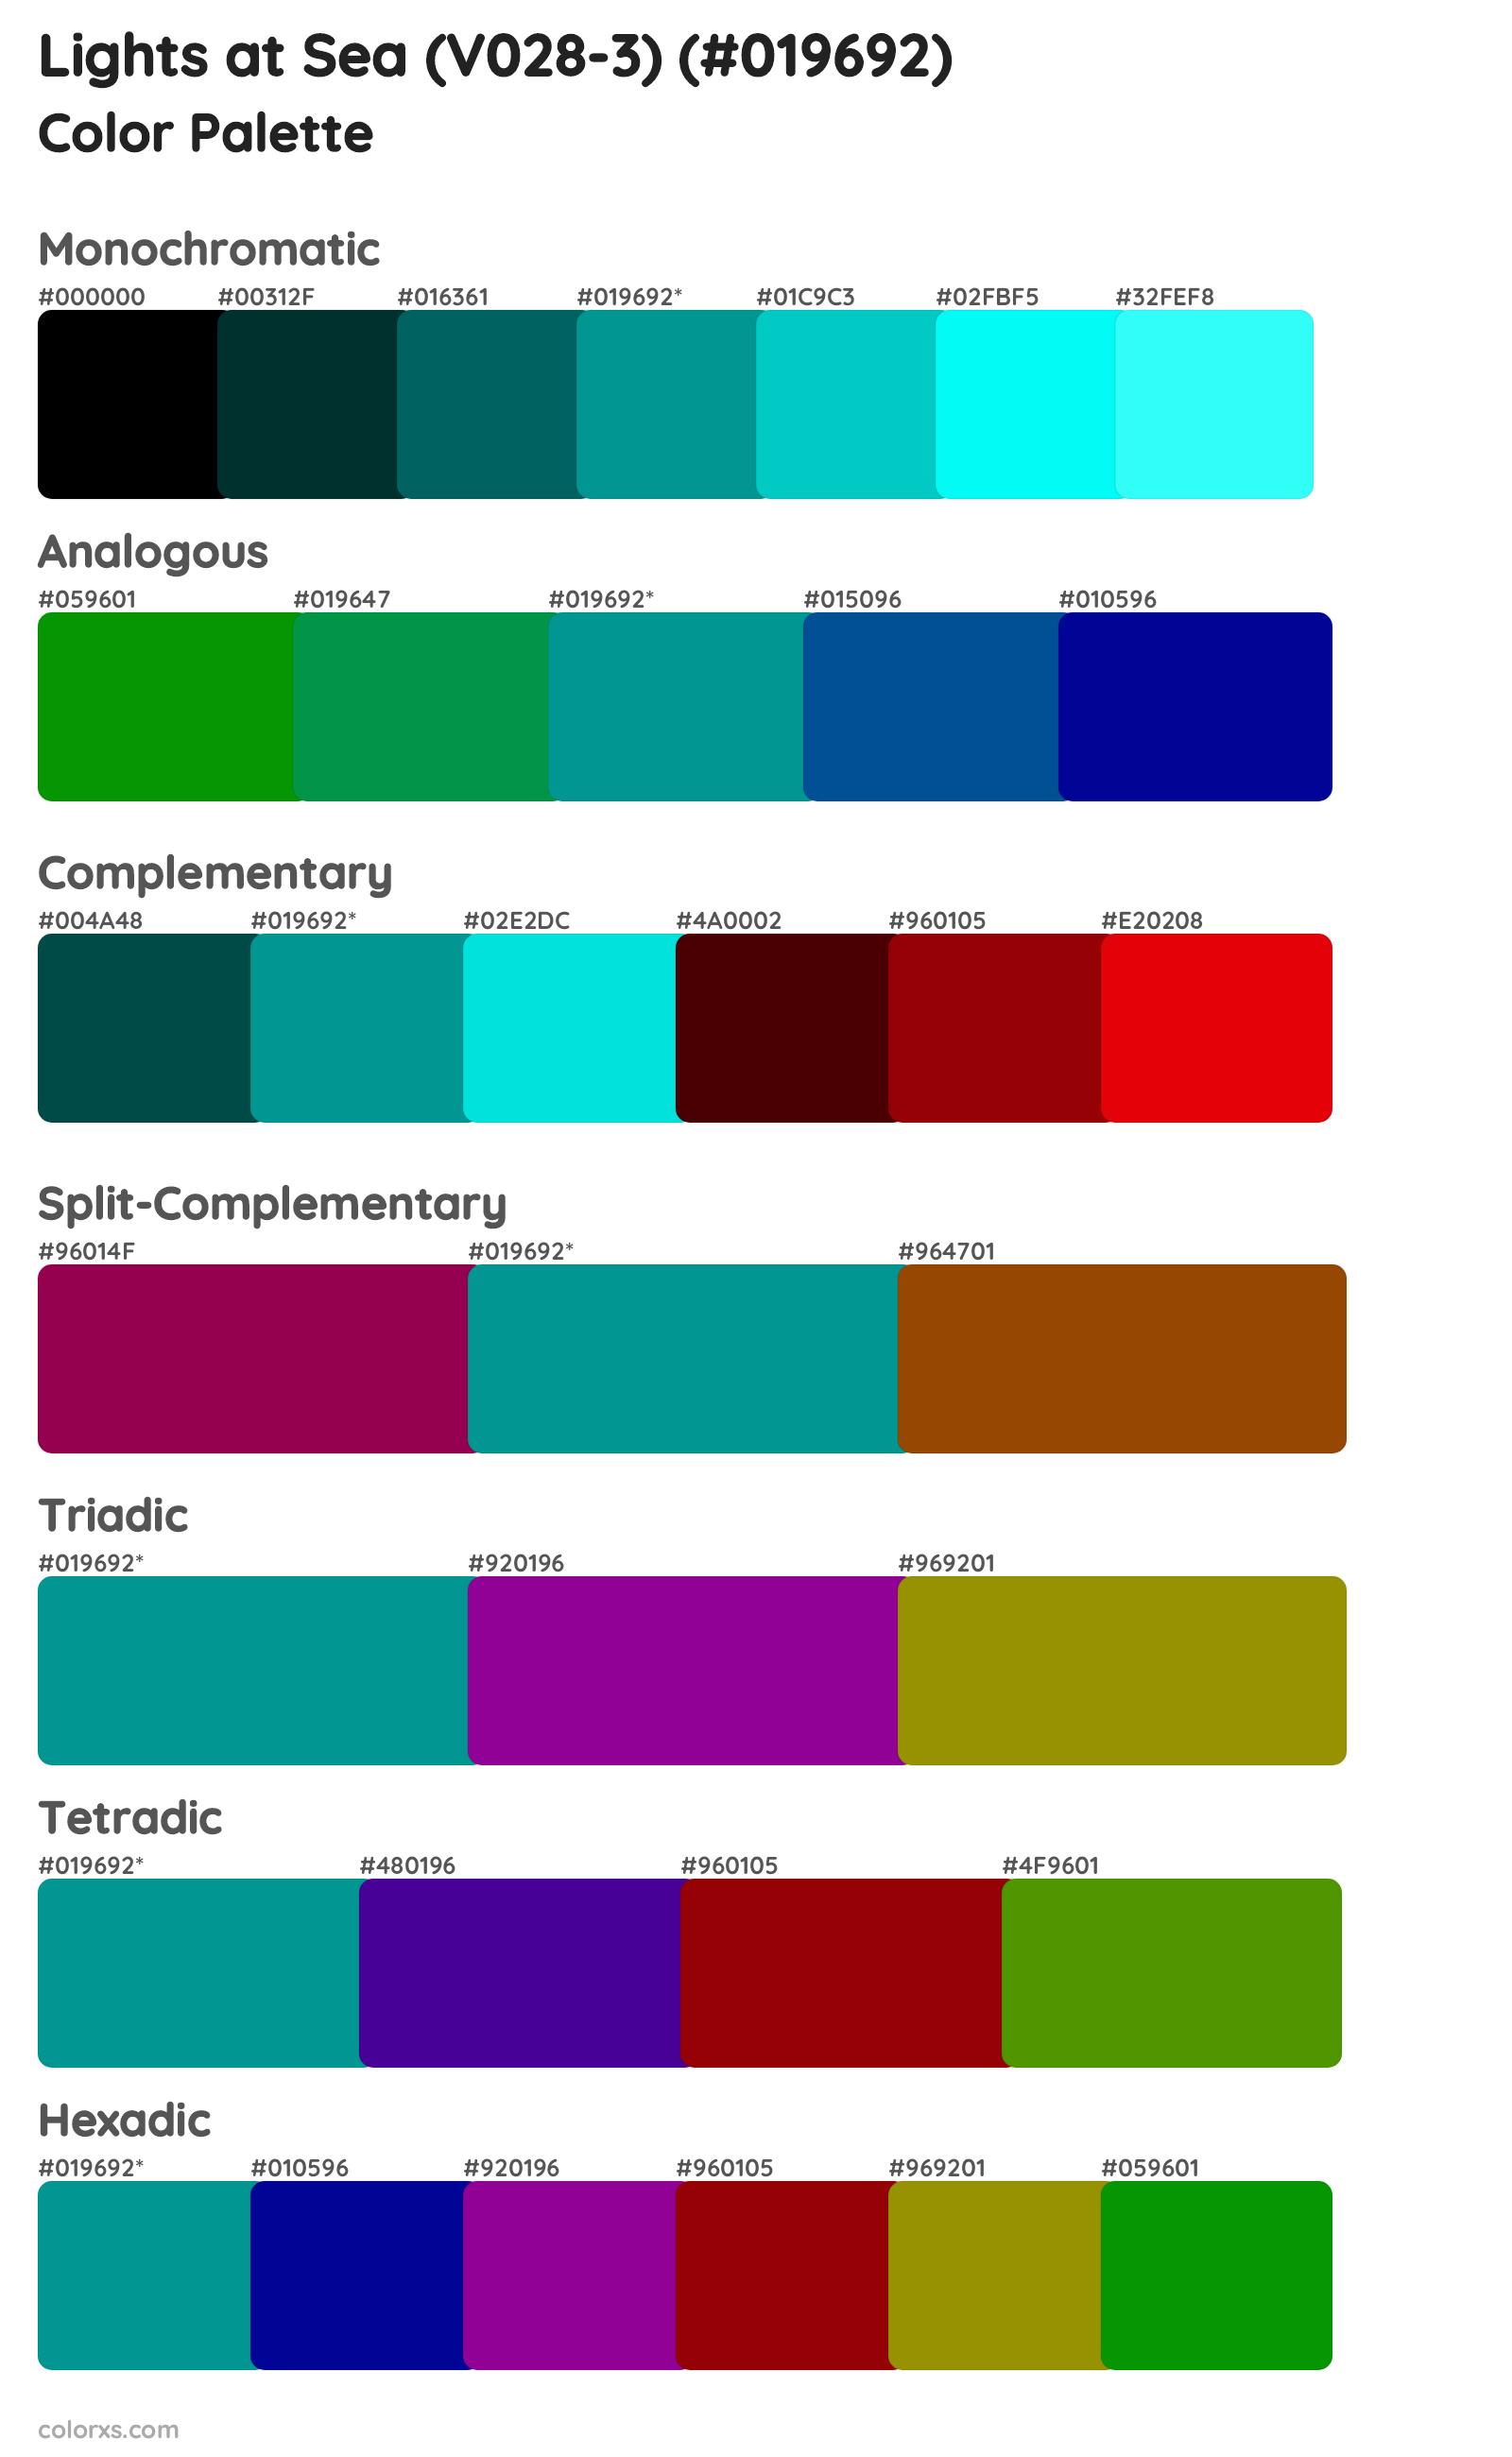 Lights at Sea (V028-3) Color Scheme Palettes